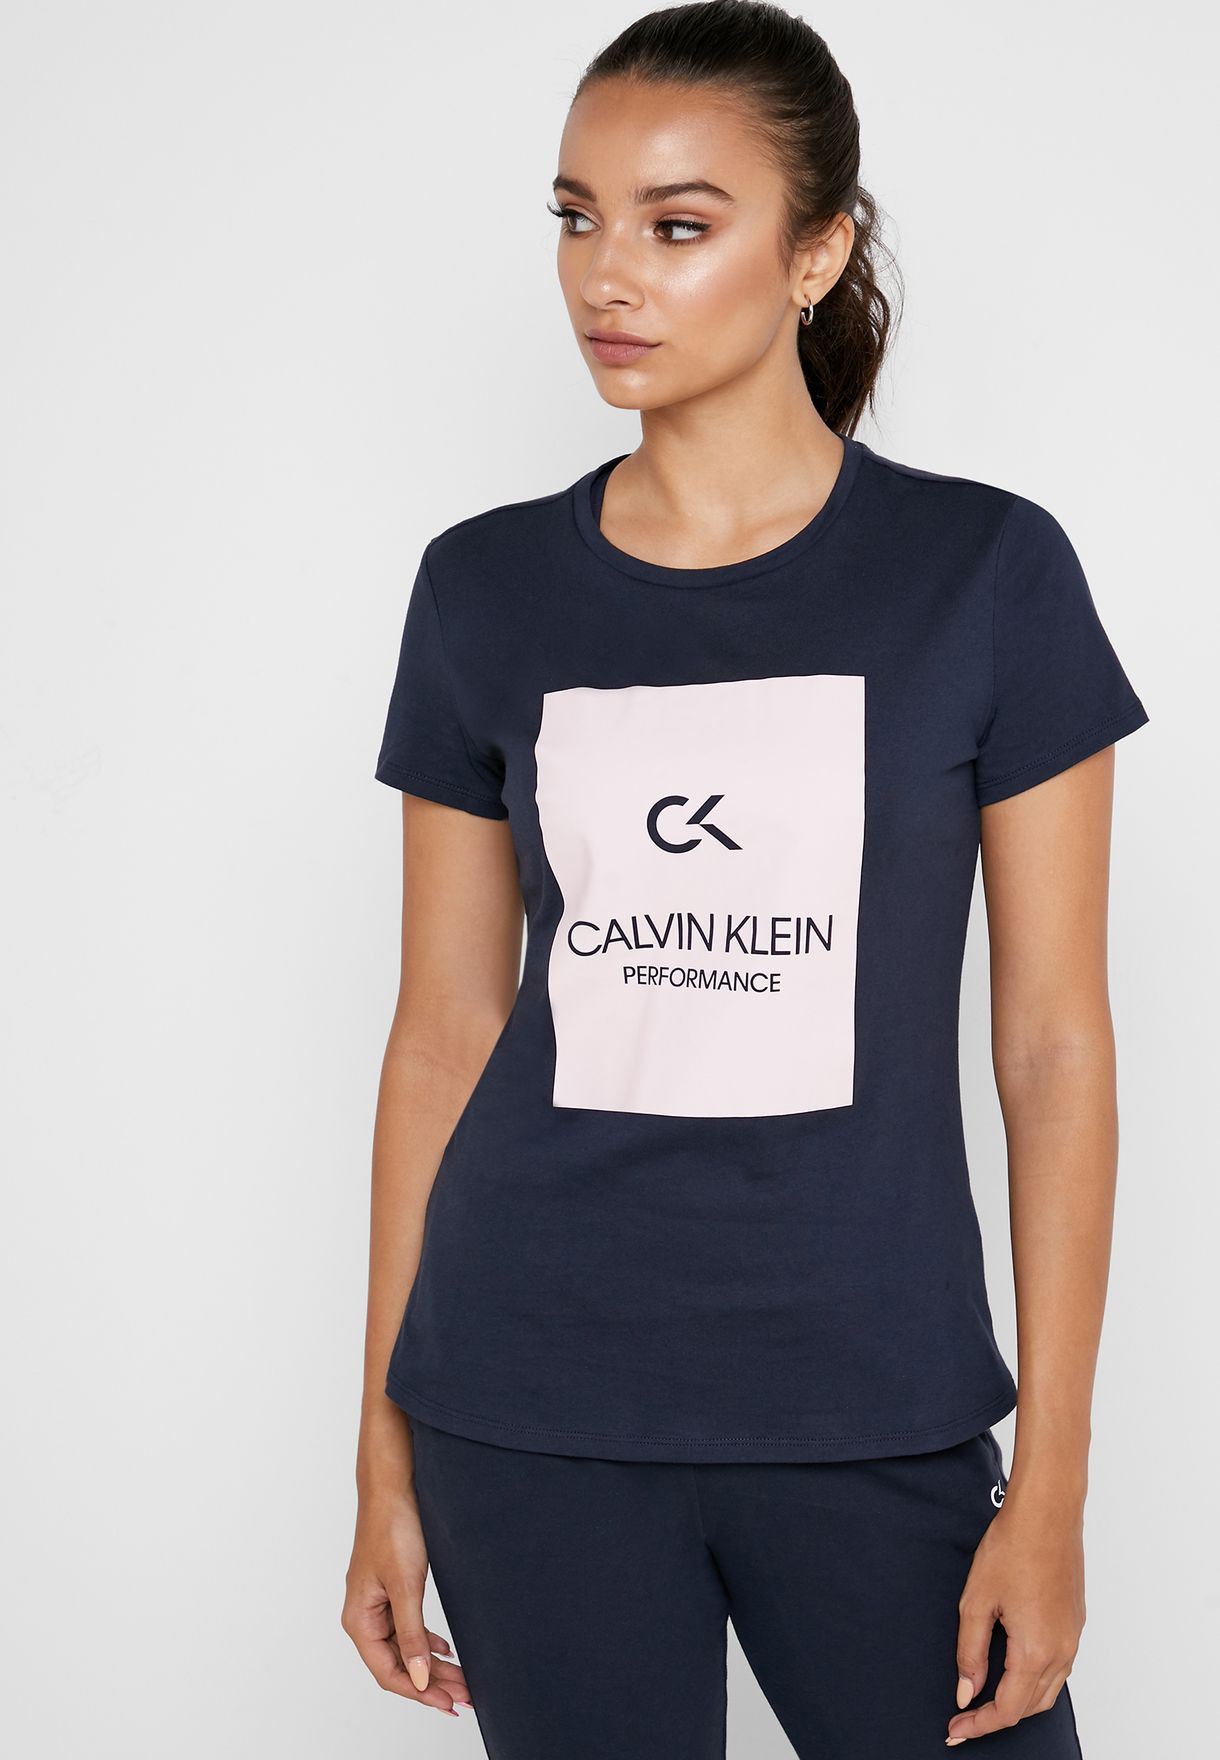 calvin klein shirts womens